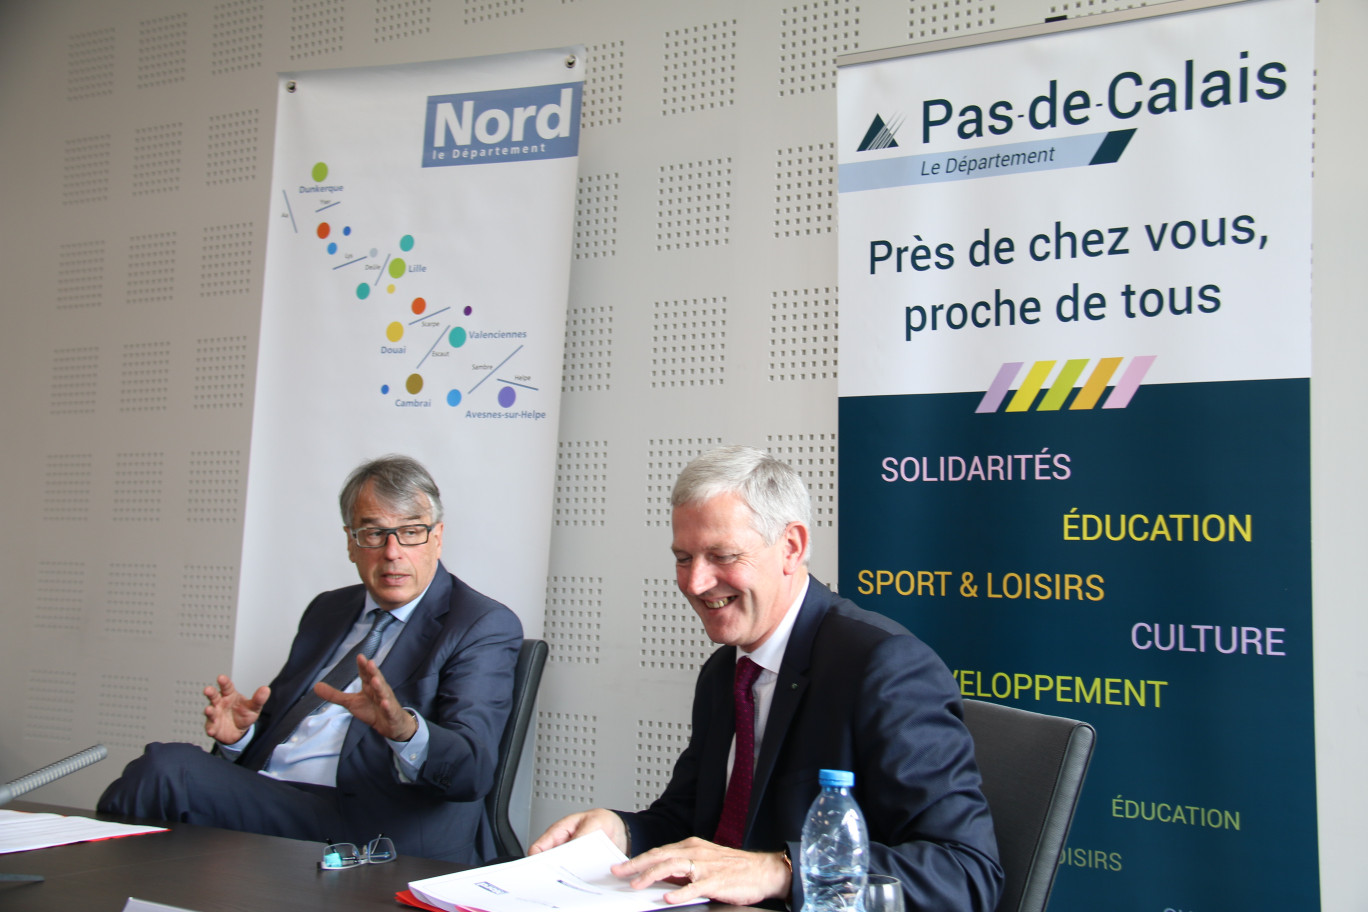 Les deux présidents, Jean-René Lecerf et Michel Dagbert, ont présenté solidairement leur proposition de « Pour un nouveau pacte financier avec l’État » avec beaucoup de conviction.  